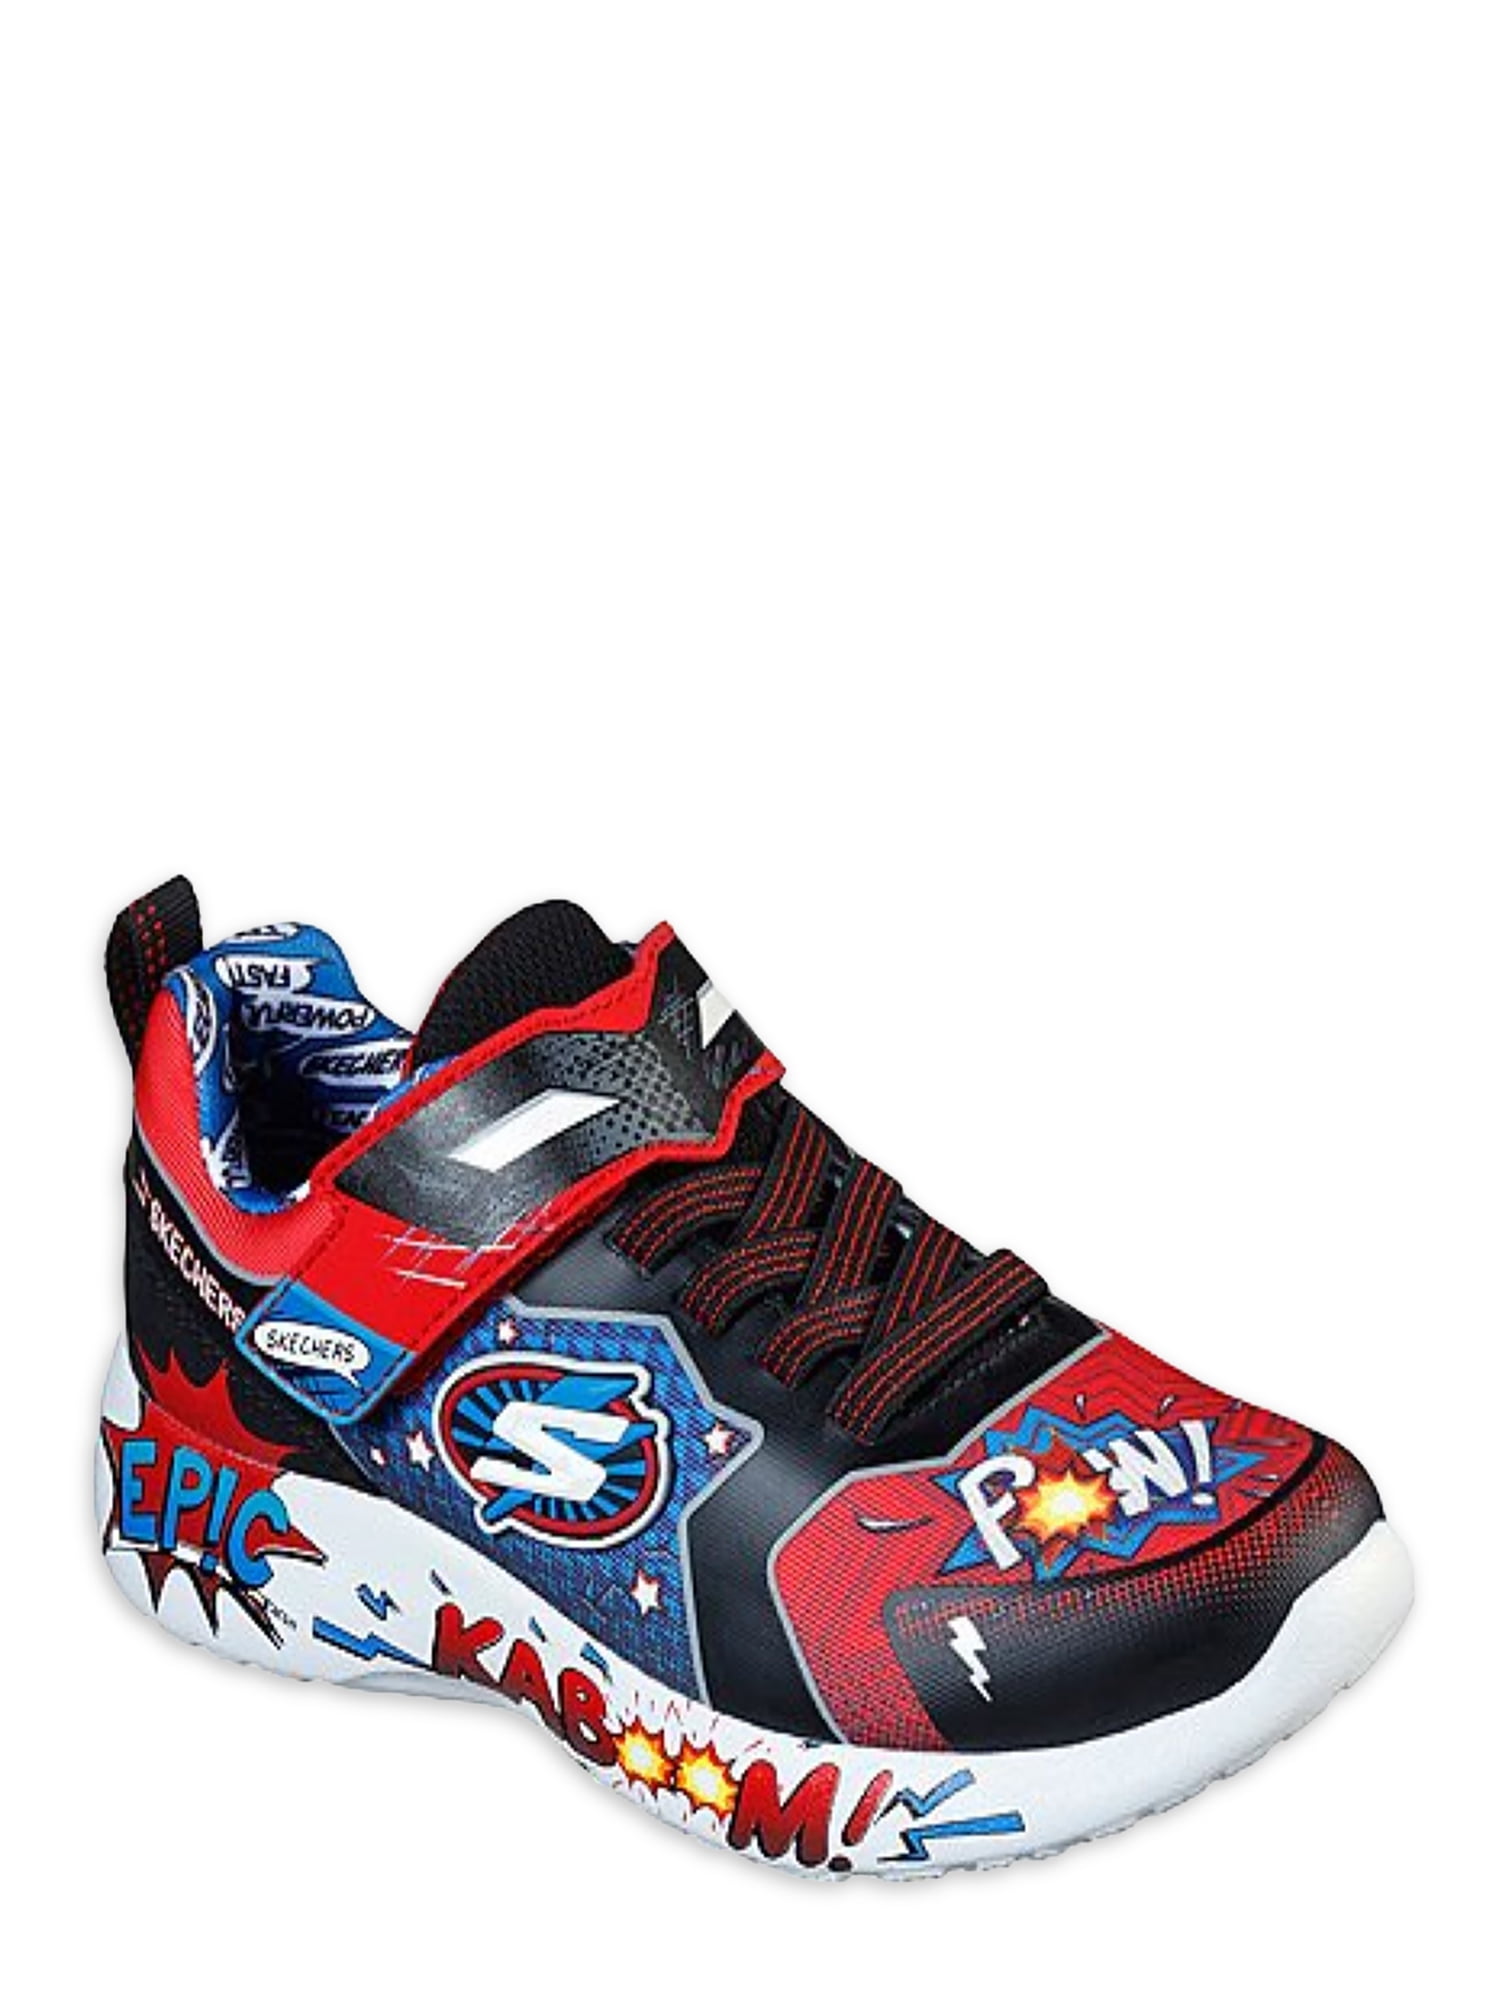 Skechers Dynamite Athletic Sneakers (Little Boy & Big Boy) - Walmart.com